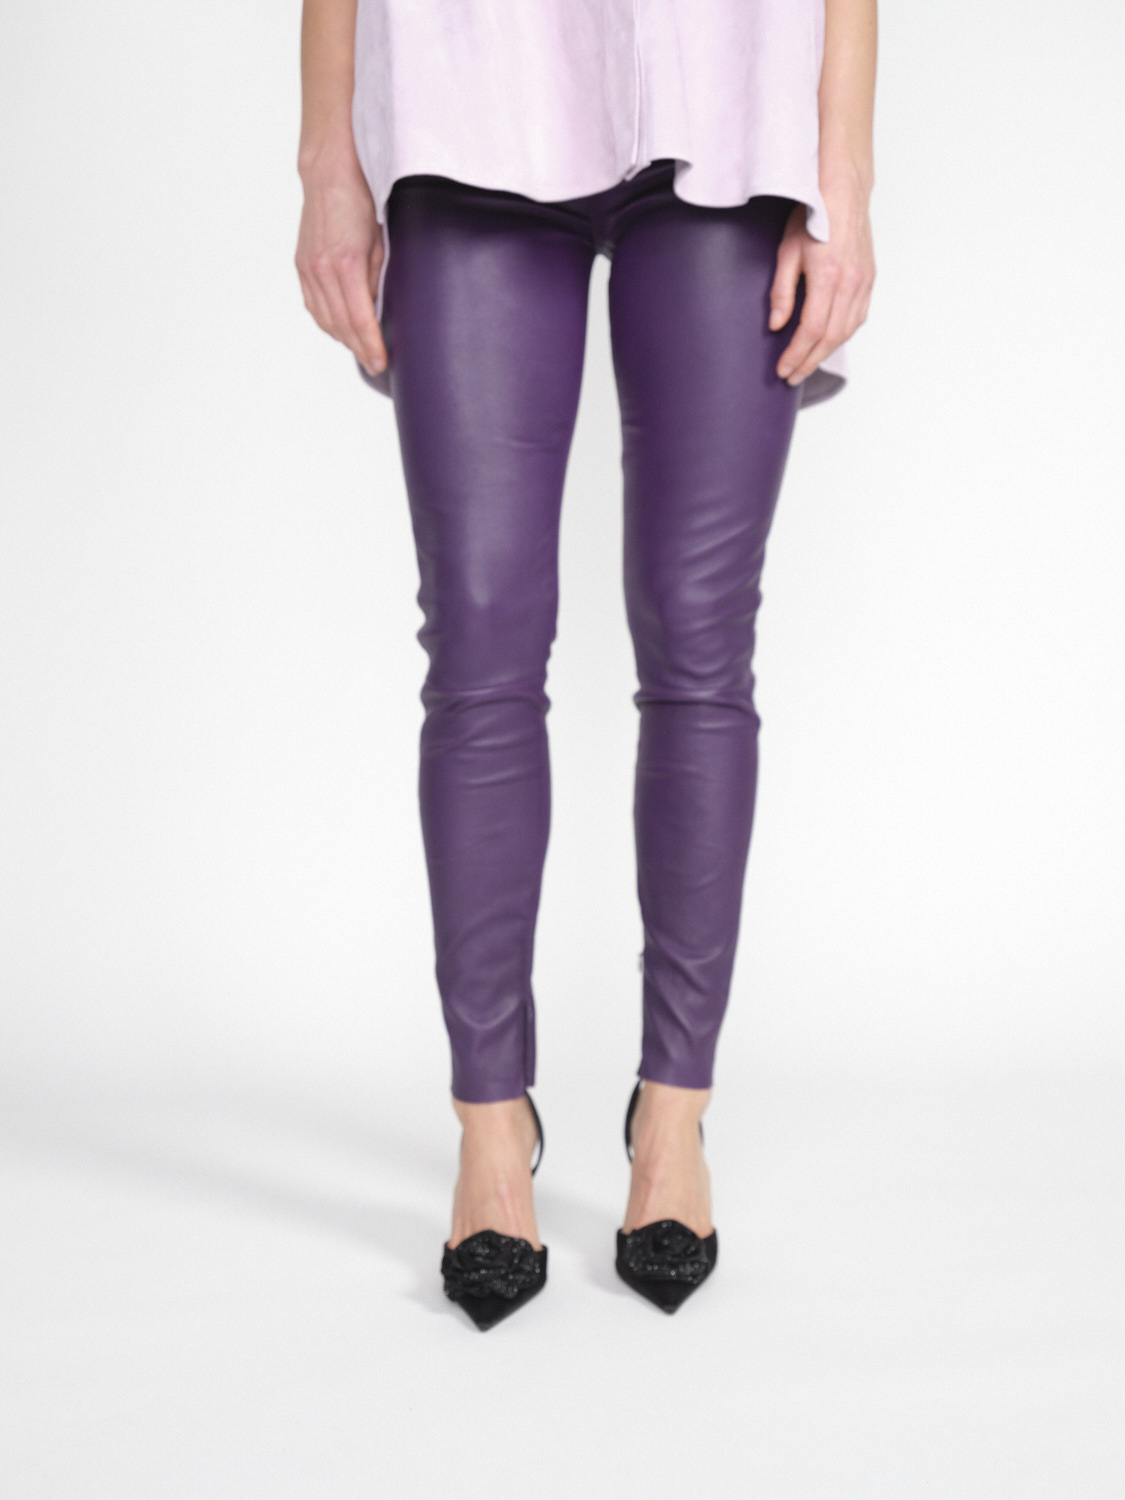 jitrois Pantalon Wynn Agneau - Pants in lamb leather purple 36